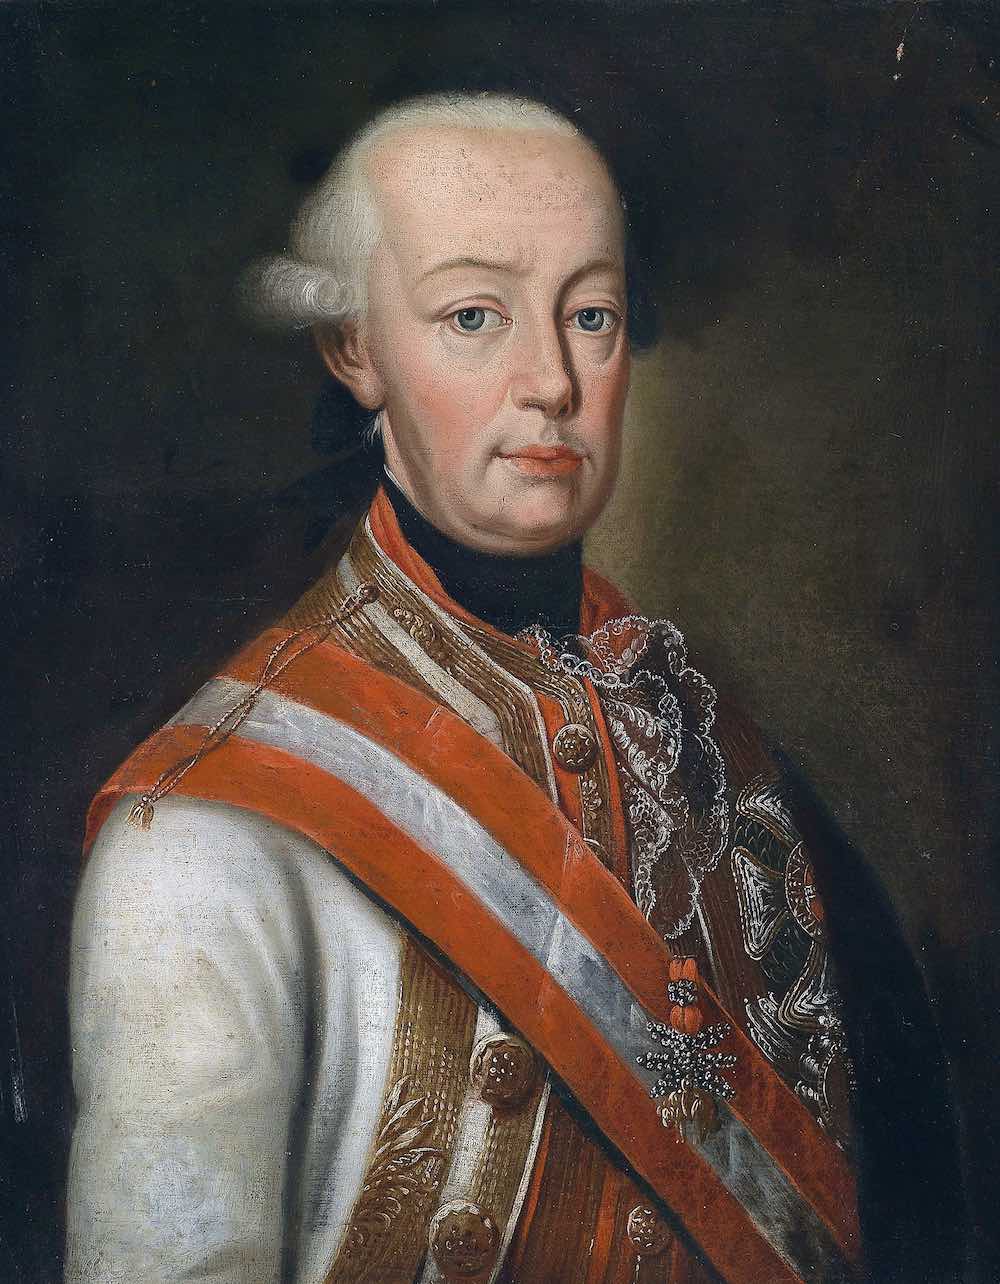 Ritratto di Pietro Leopoldo, Granduca di Toscana e Imperatore d'Austria